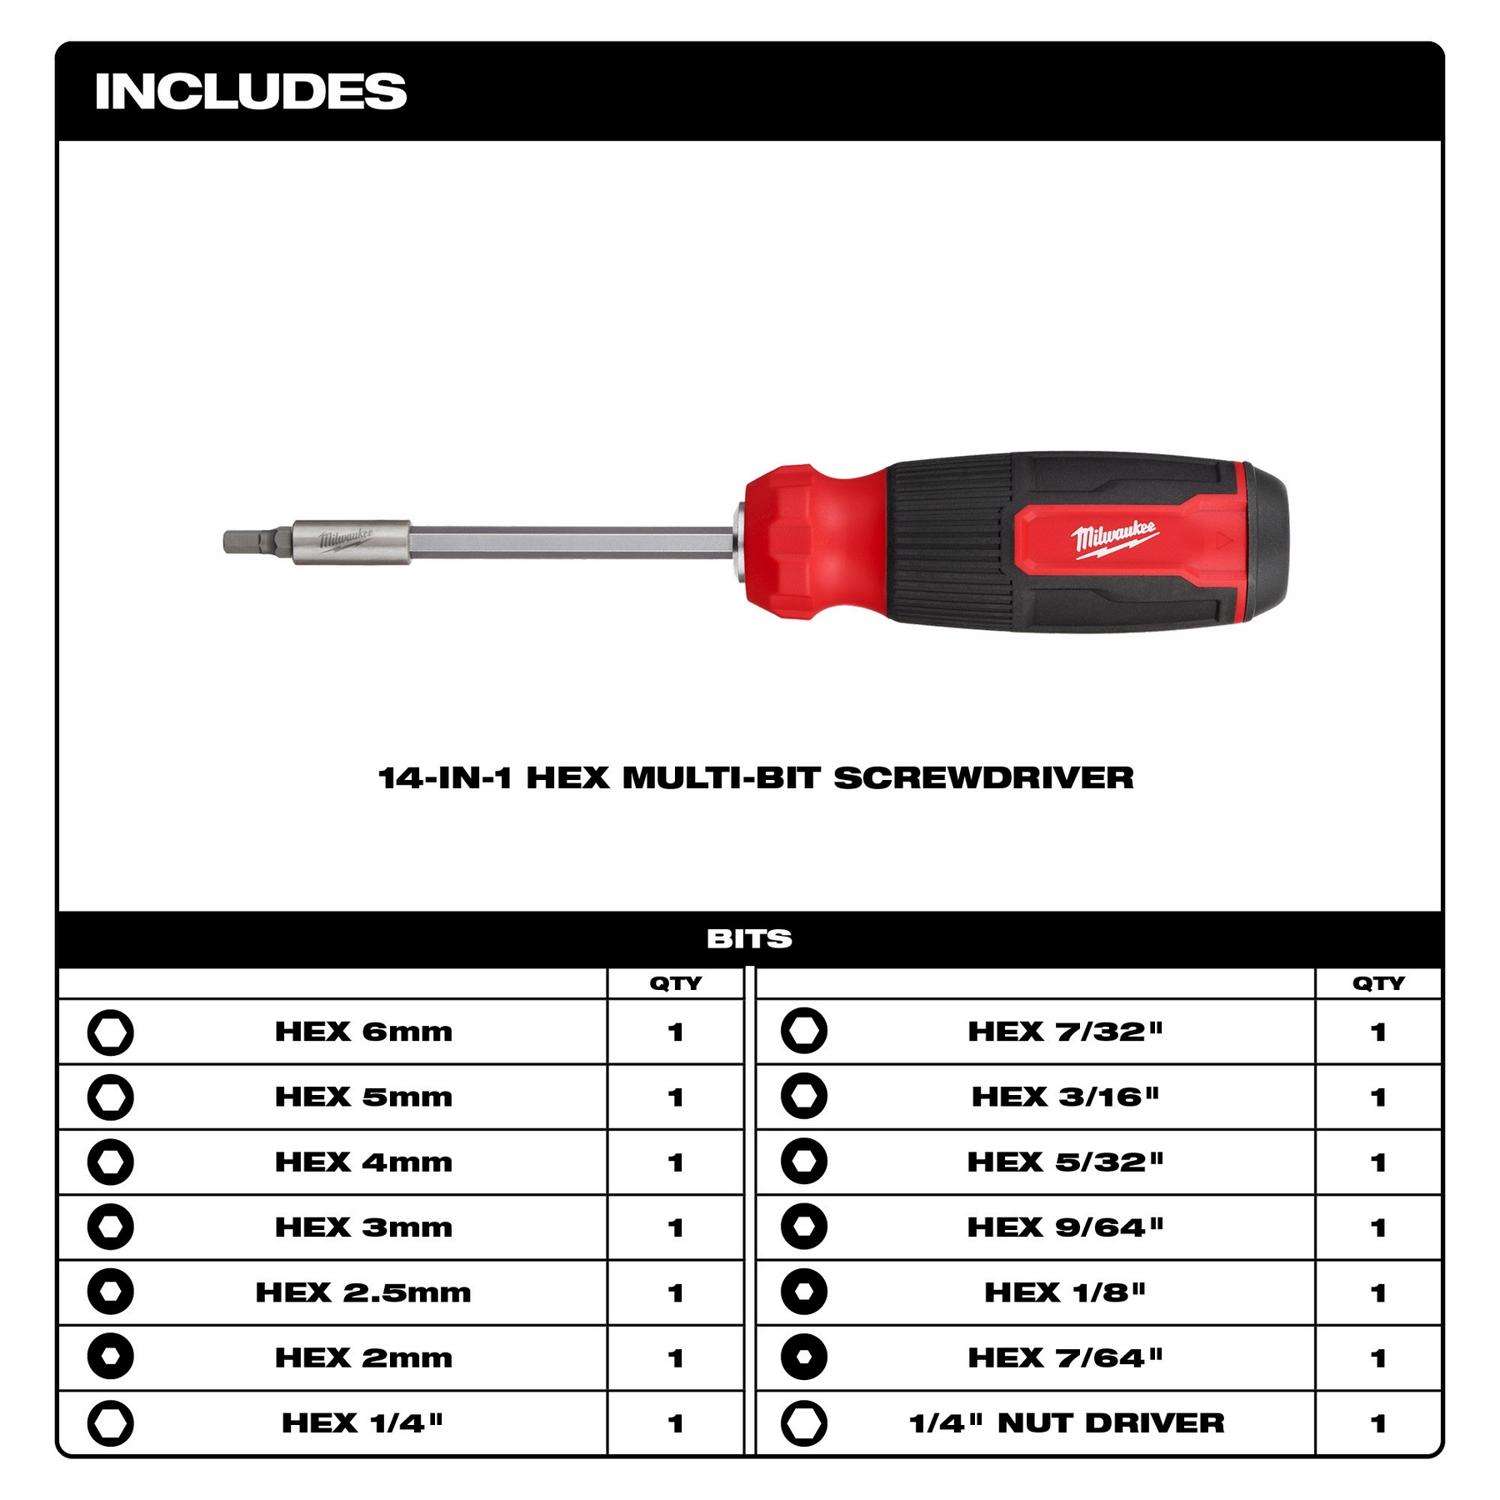 2pcs specialty tools & gadgets Drill Press Handle Threaded Stem Handles